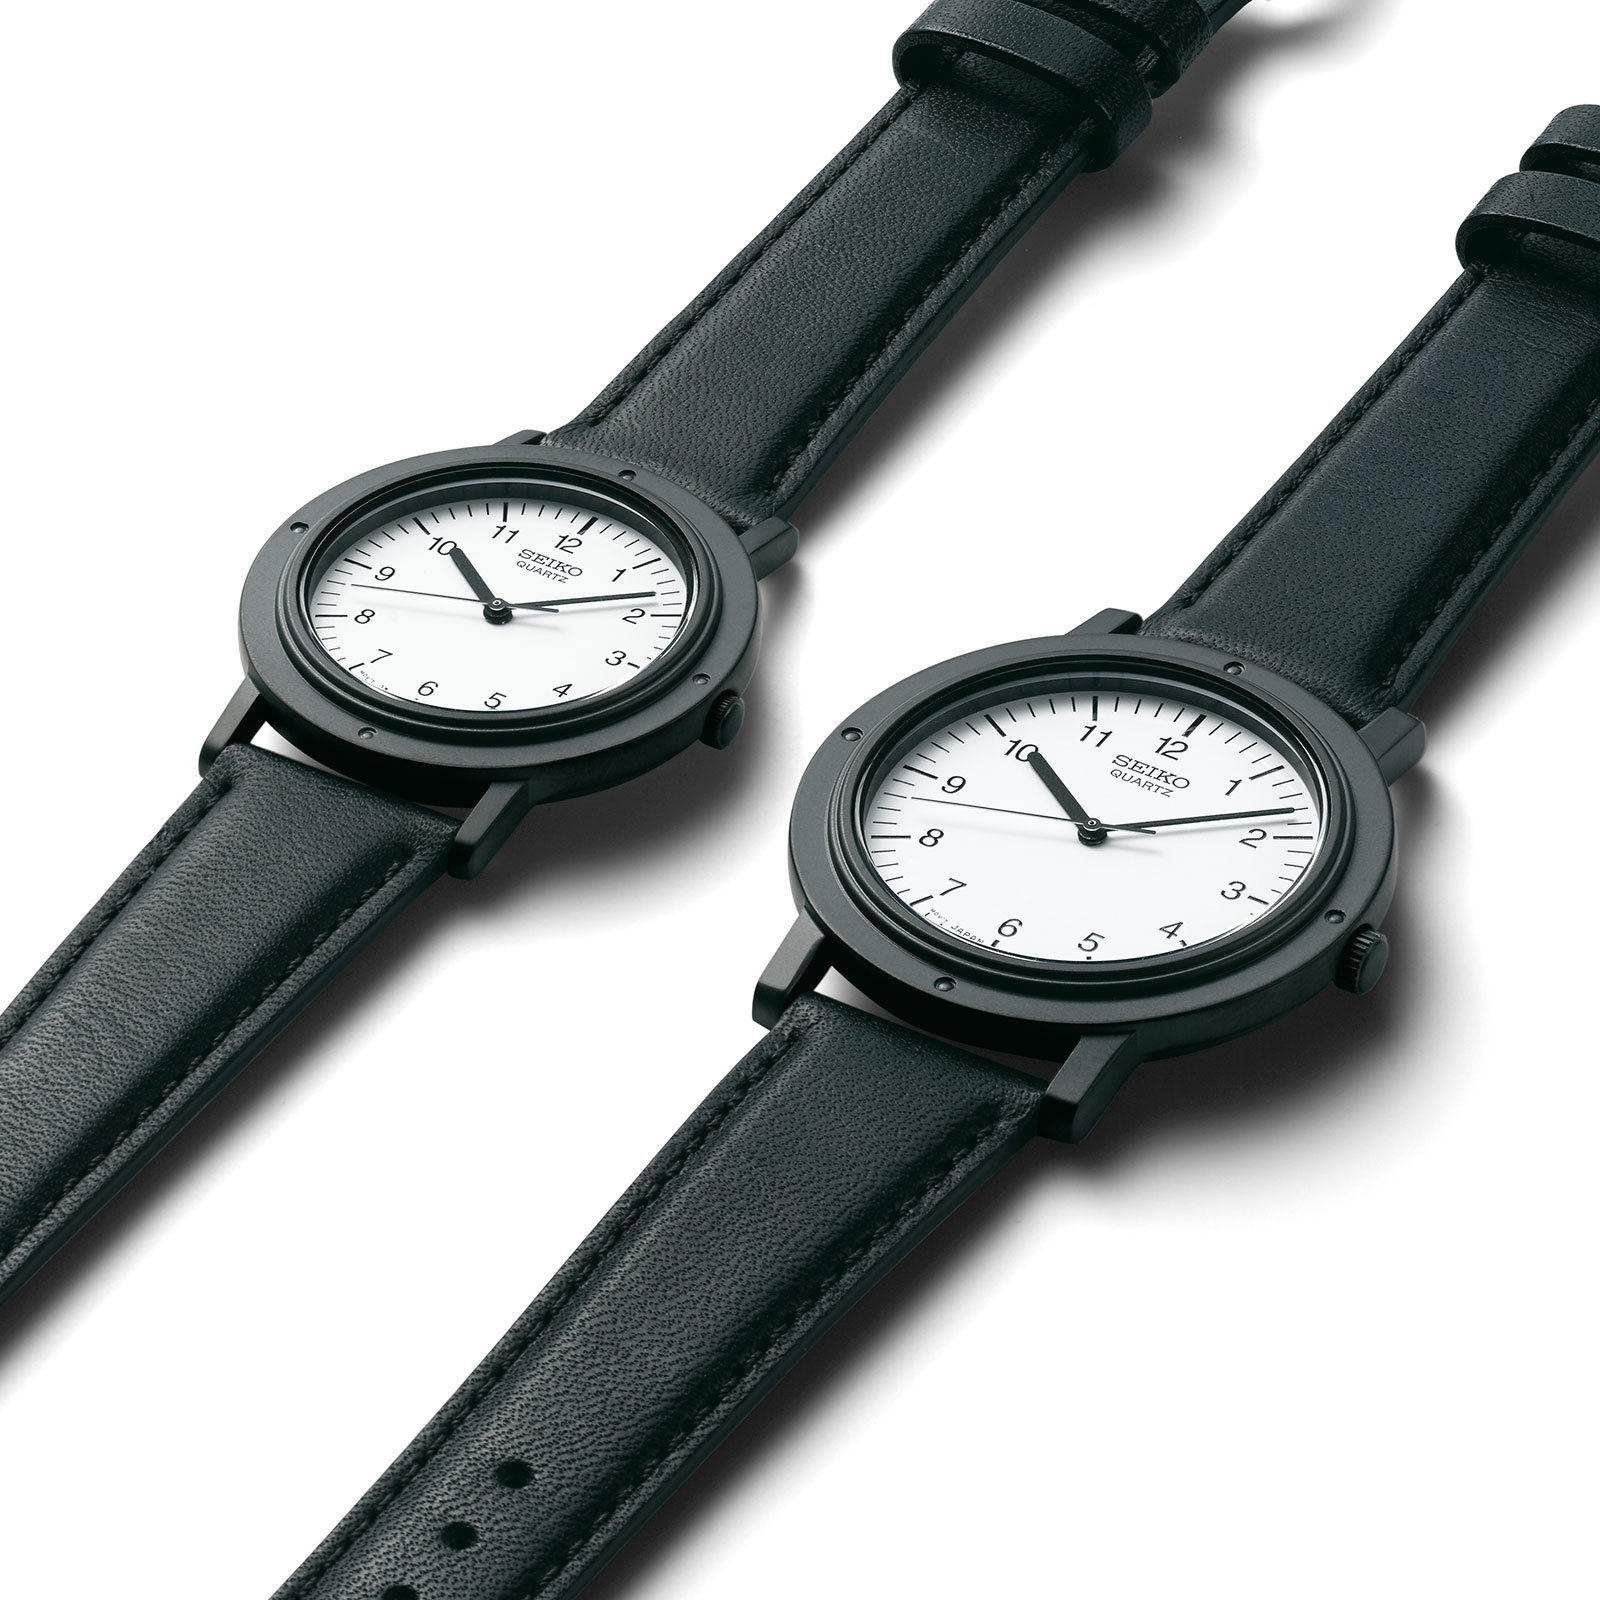 Buy MyKronoz Ze Nano Smart Watch Black Online - Best Price MyKronoz Ze Nano  Smart Watch Black - Justdial Shop Online.